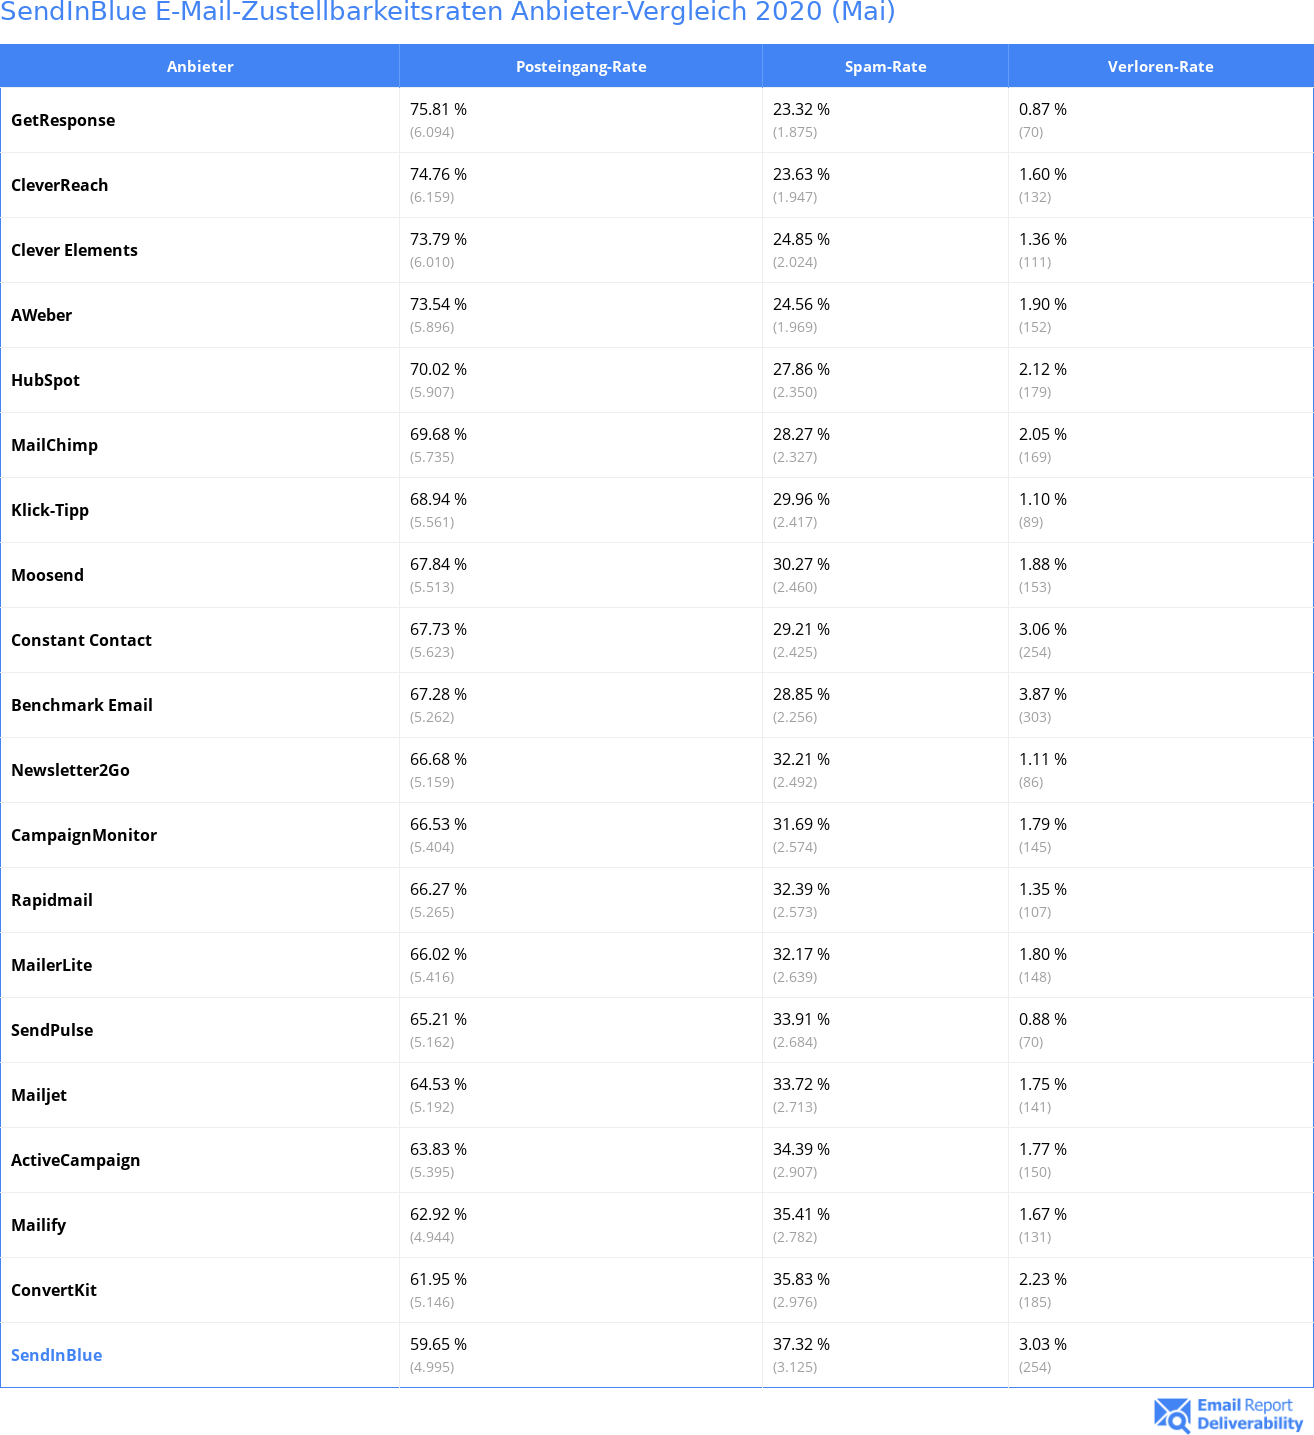 SendInBlue E-Mail-Zustellbarkeitsraten Anbieter-Vergleich 2020 (Mai)